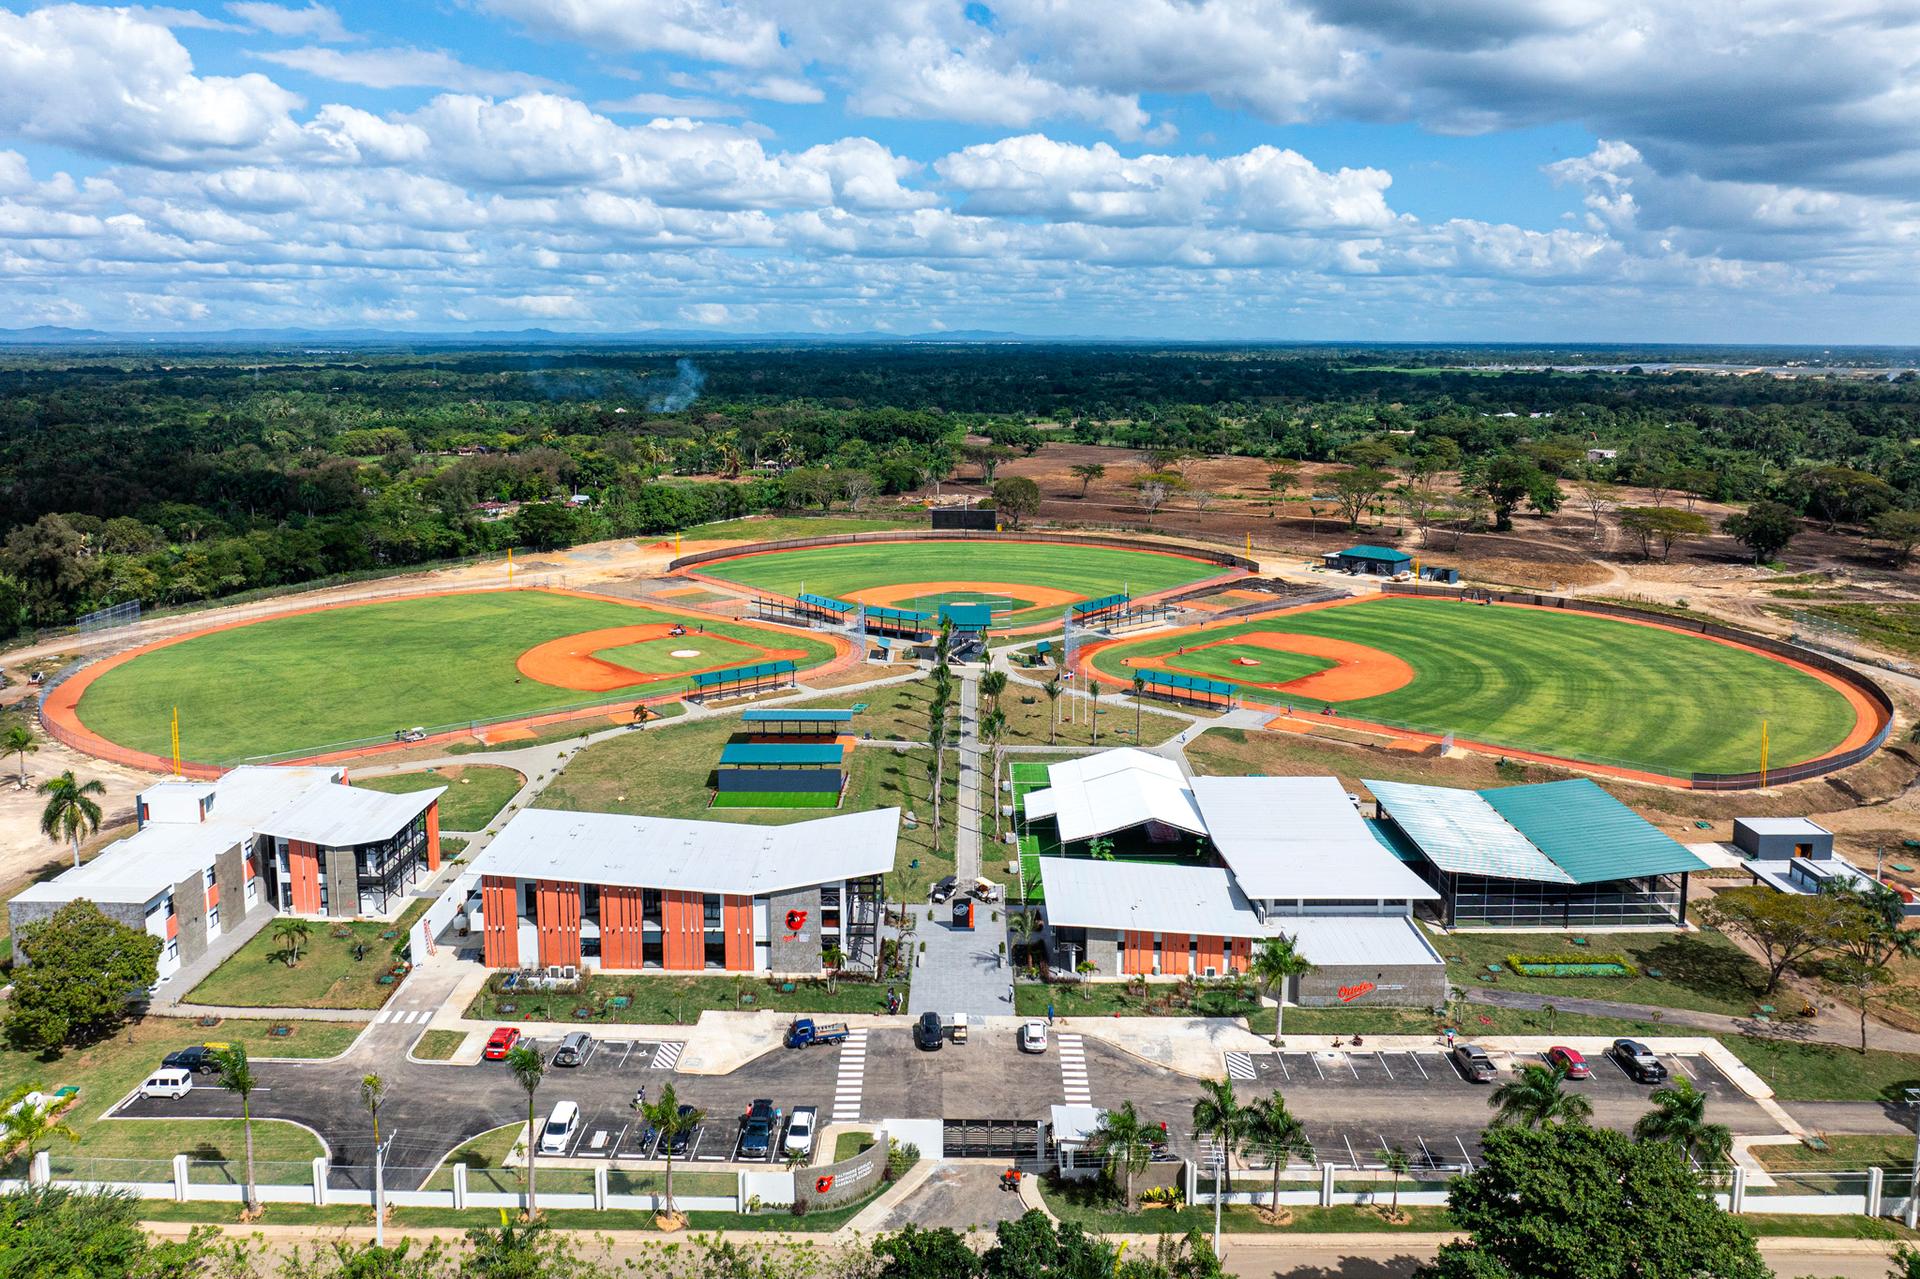 Orioles' Dominican Republic baseball academy